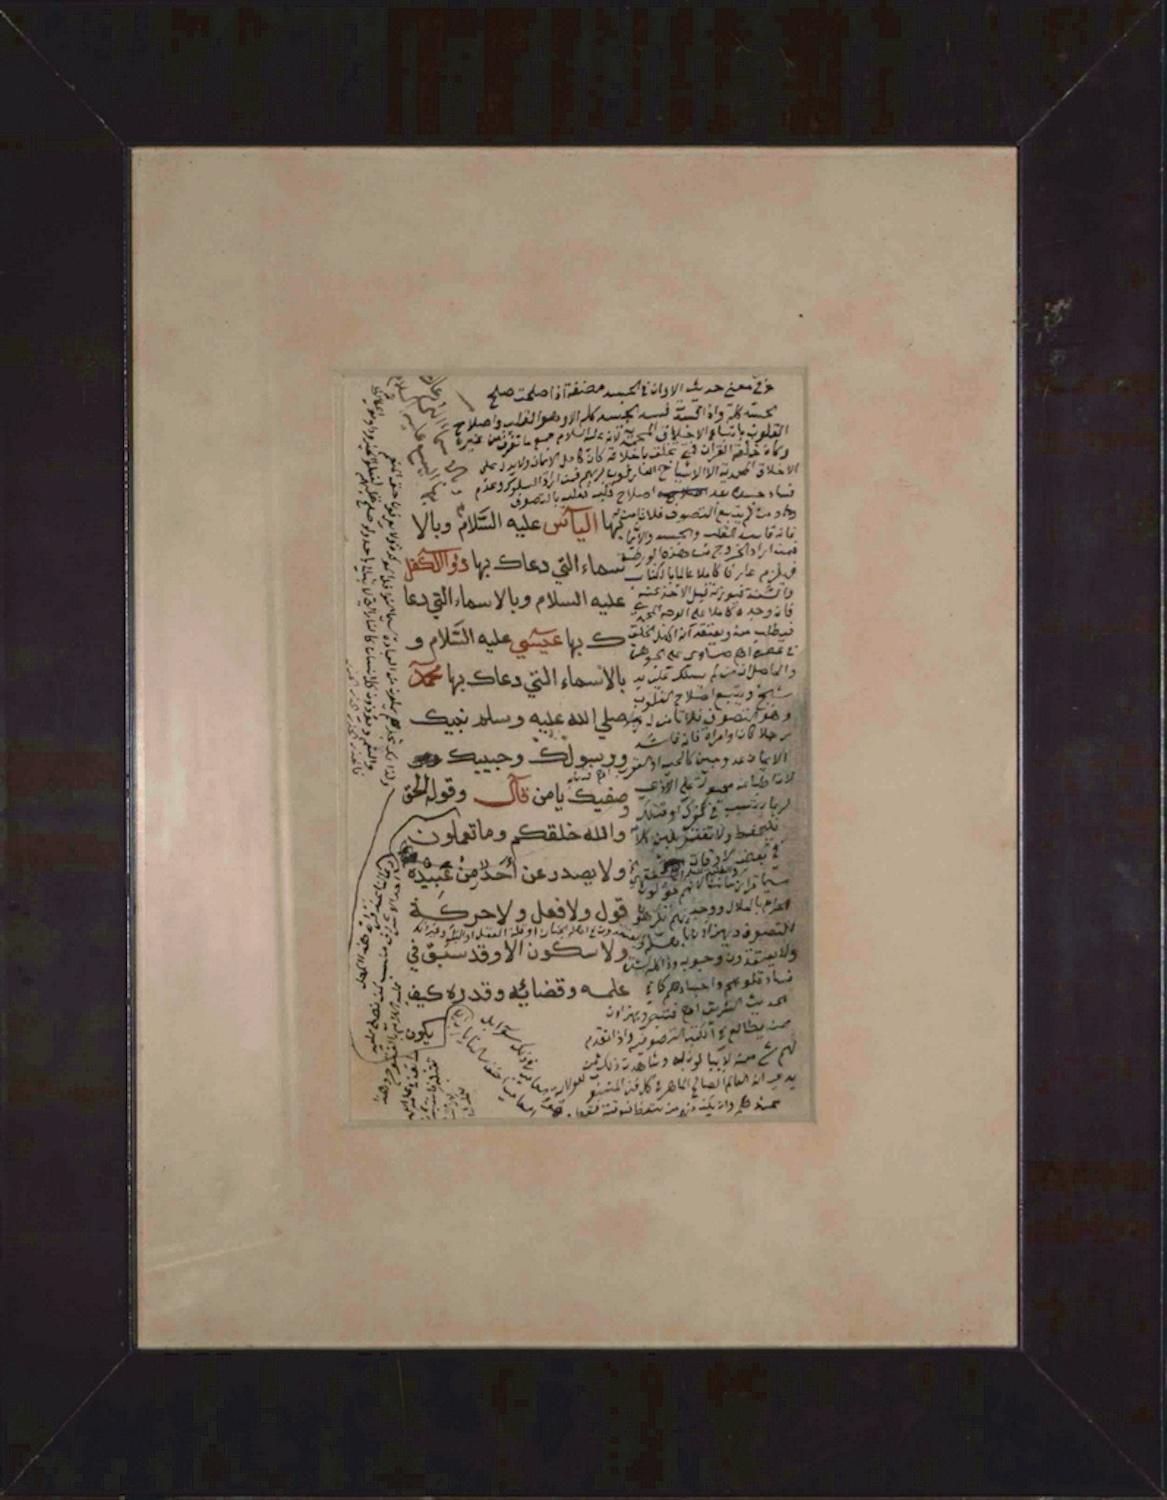 Die arabische Kalligrafie ist ein kostbares Manuskript mit heiligen islamischen Versen in einem alten kalligrafischen Stil.

Eine Seite, einseitig, in arabischer Sprache, das Originalblatt (cm 17 x 11). In gutem Zustand, bis auf einen sichtbaren